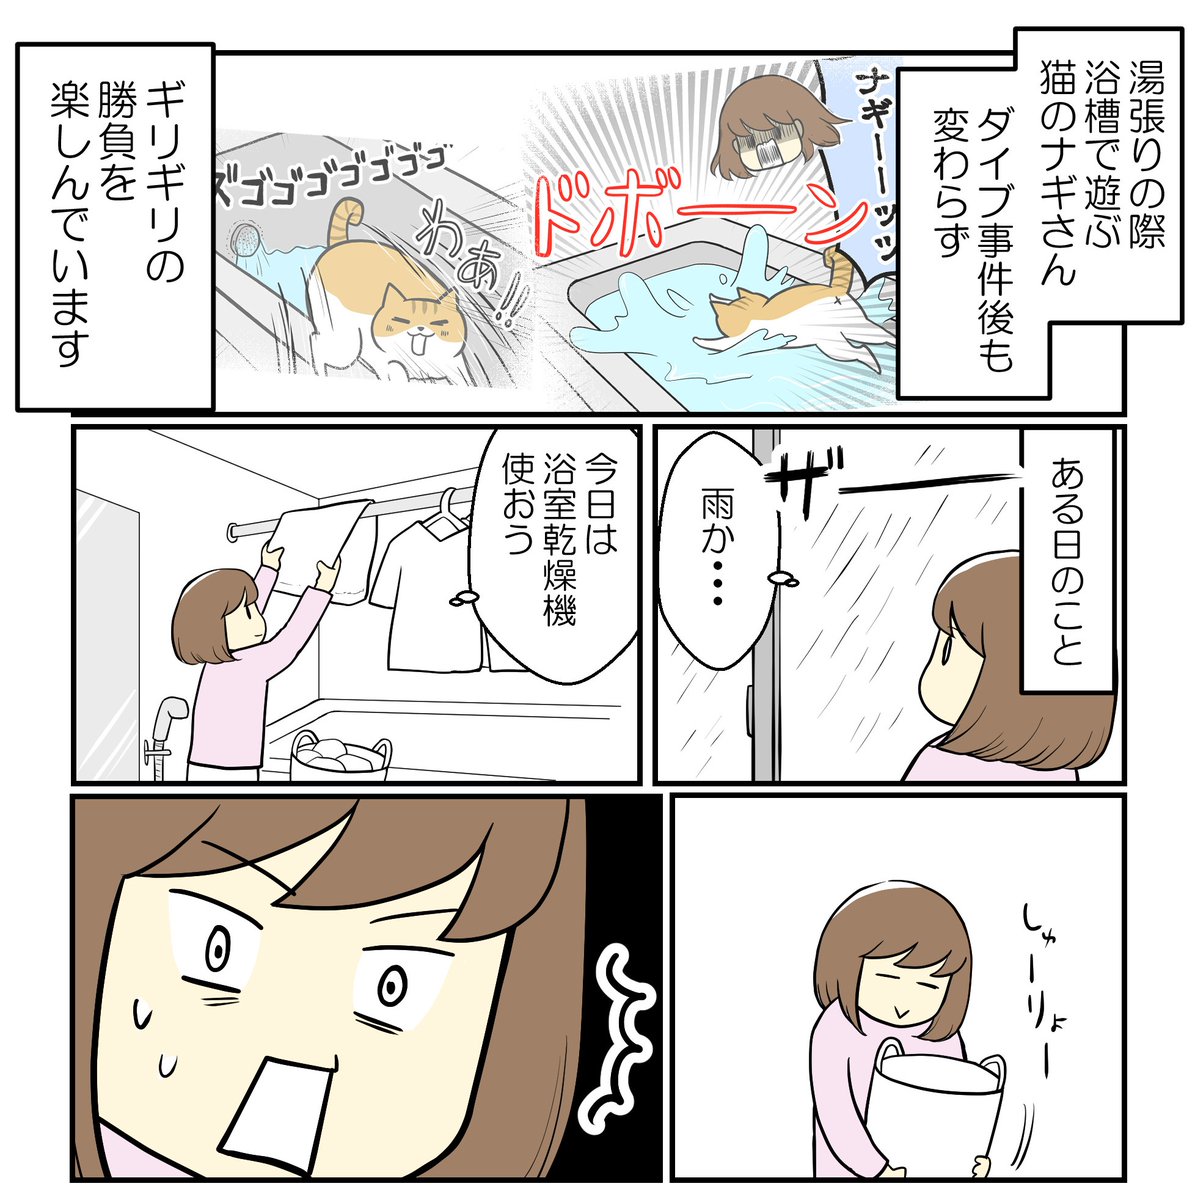 お風呂大好き猫に事件発生(1/2)

#漫画が読めるハッシュタグ 